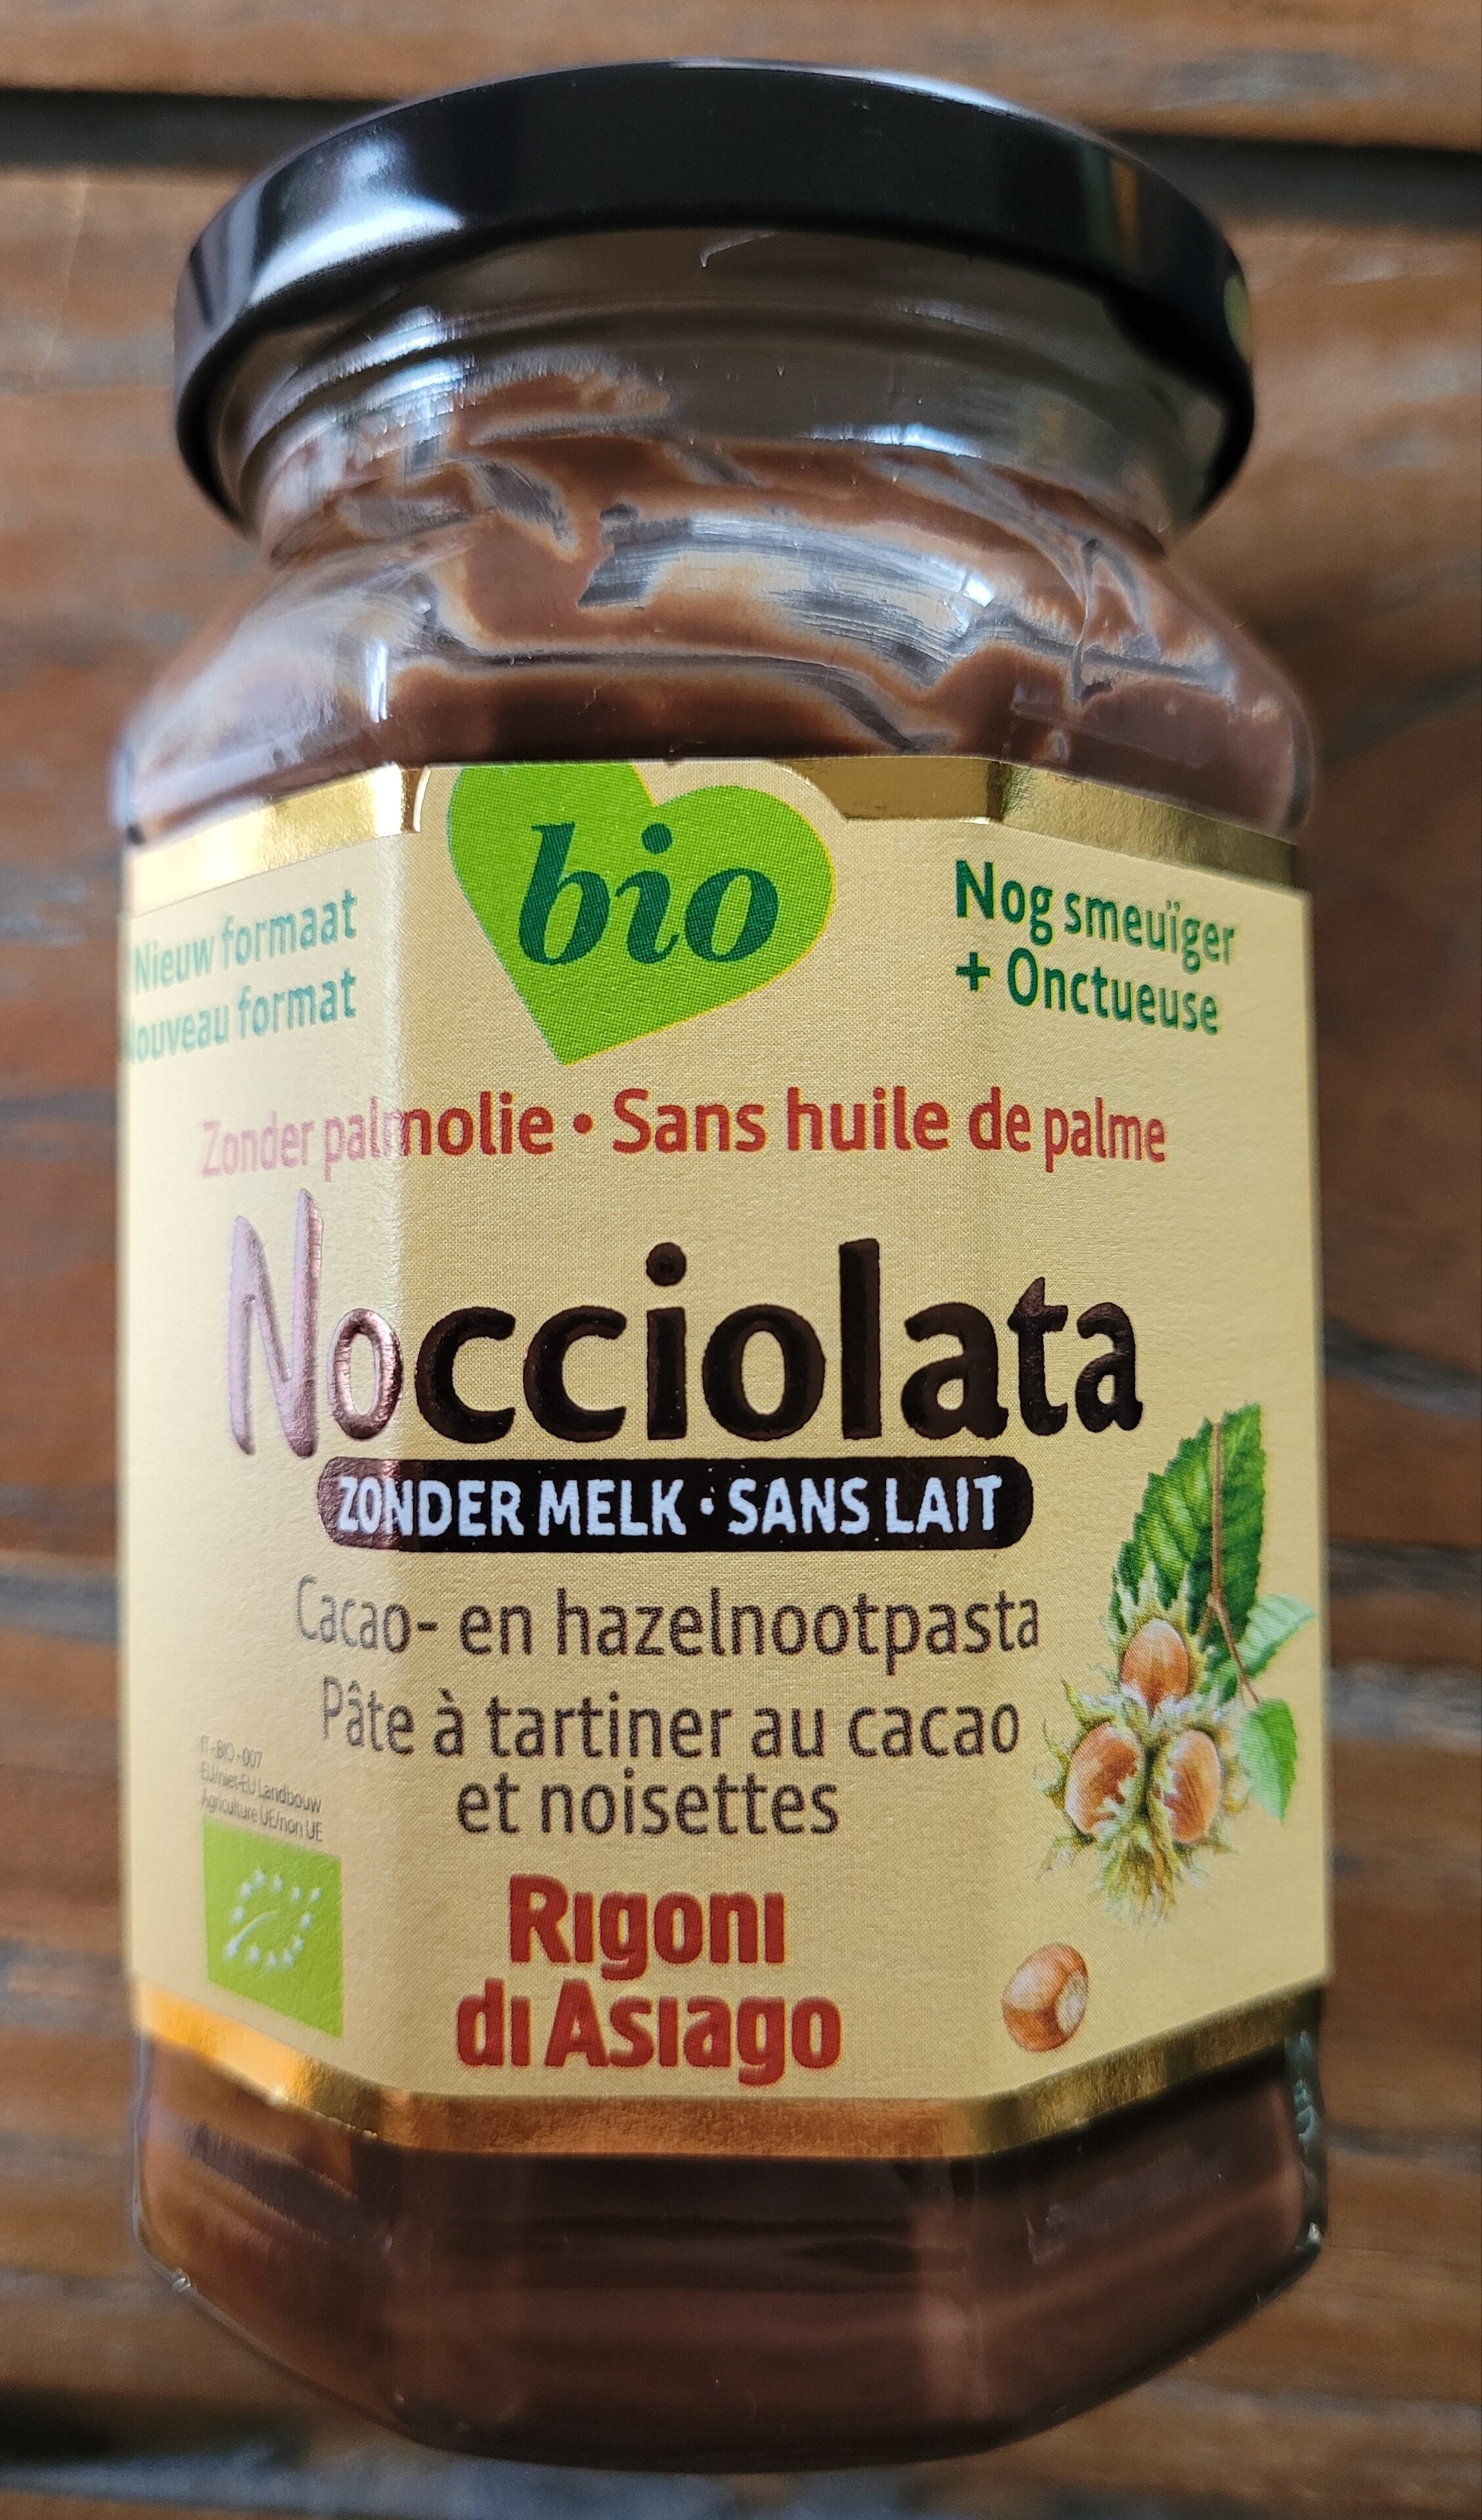 Nocciolata - sans lait - Produit